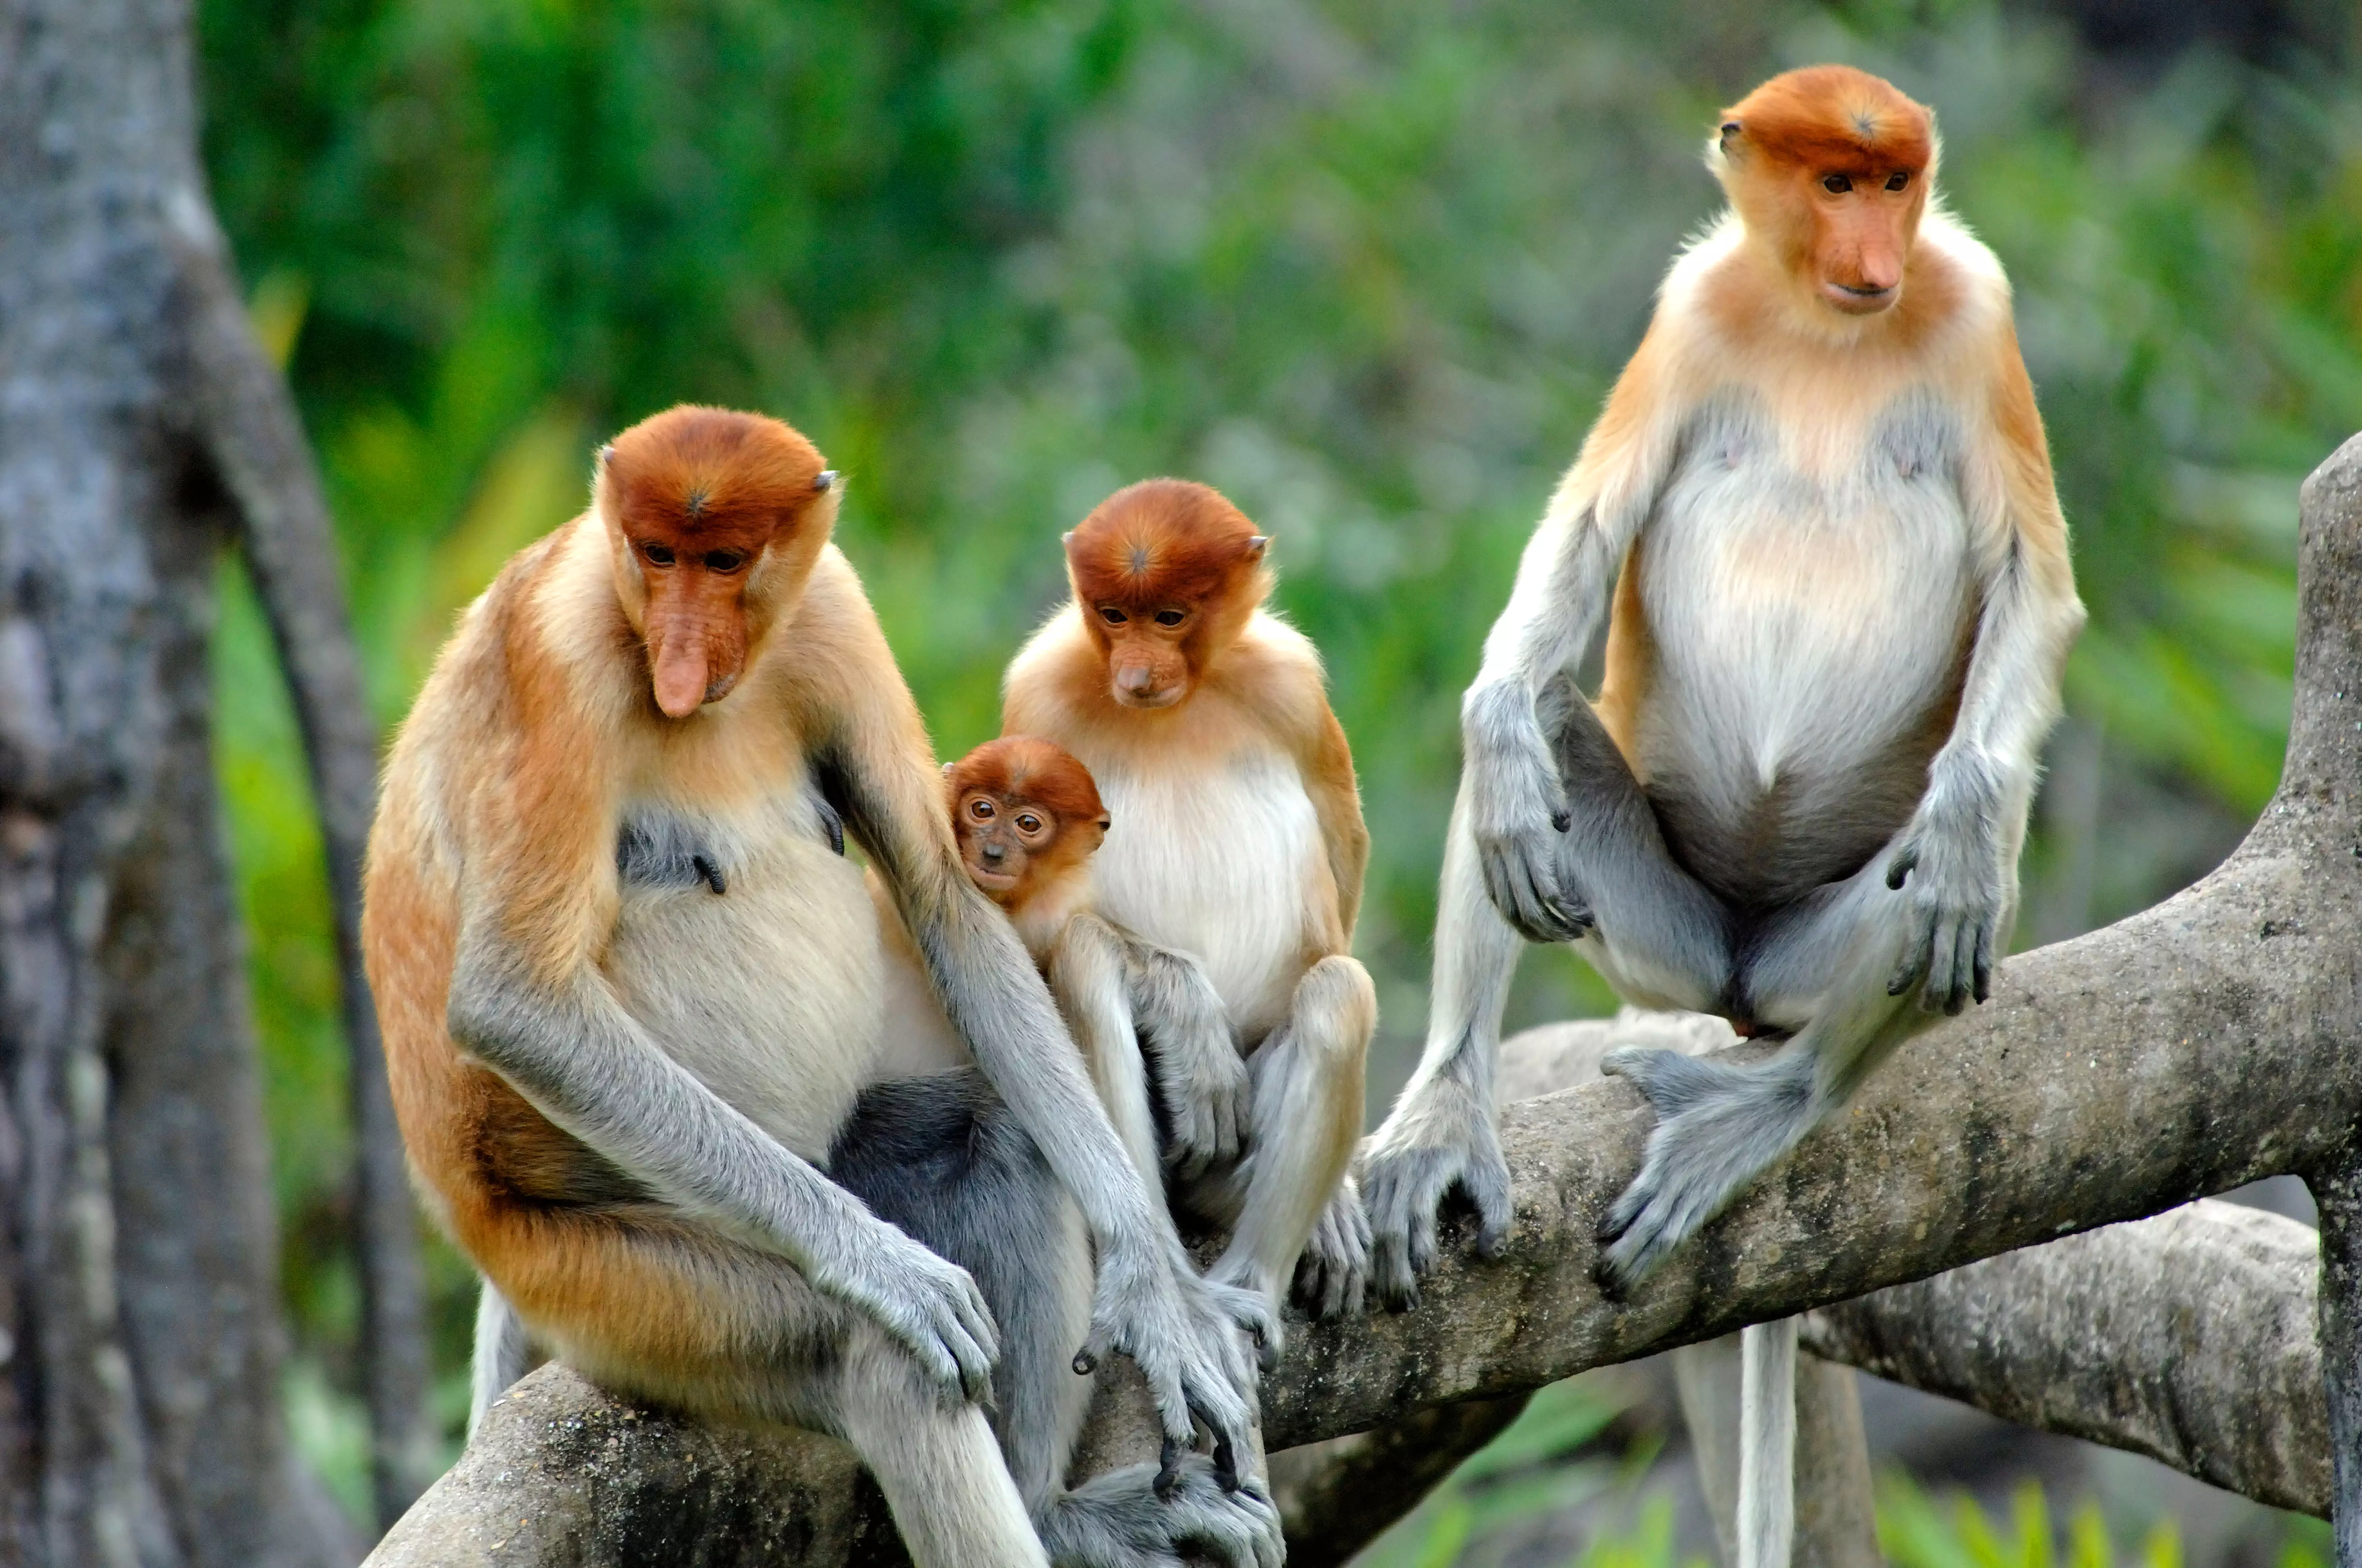 Proboscis monkeys ở Borneo Malaysia, một trong những điểm đến kỳ nghỉ gia đình tốt nhất